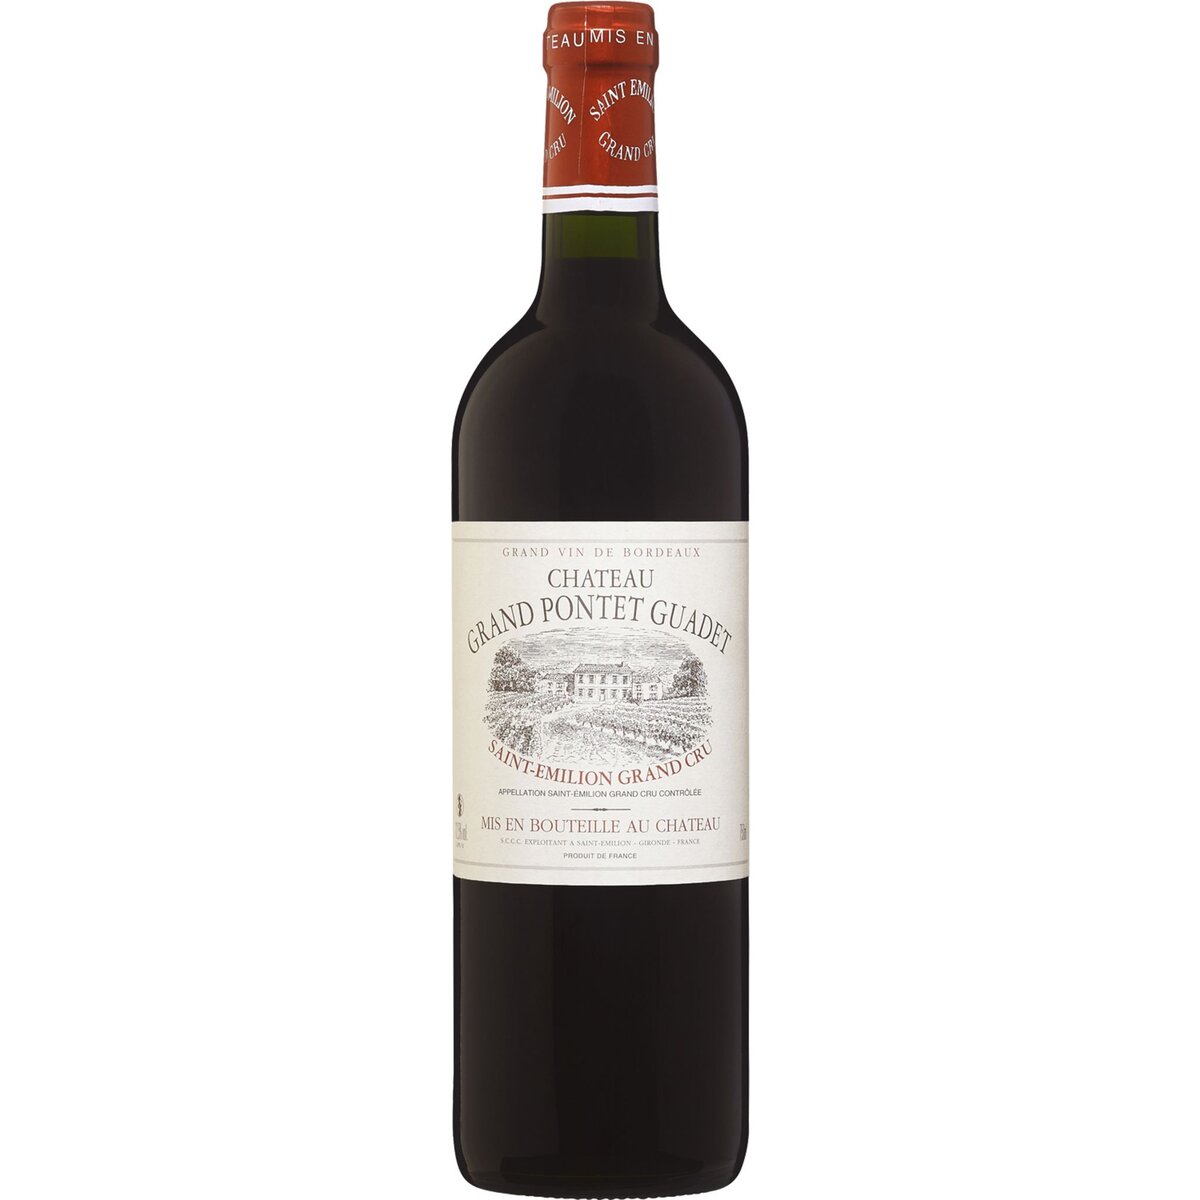 Vin rouge AOP Saint-Emilion Grand cru Château Grand-Pontet-Guadet 75cl